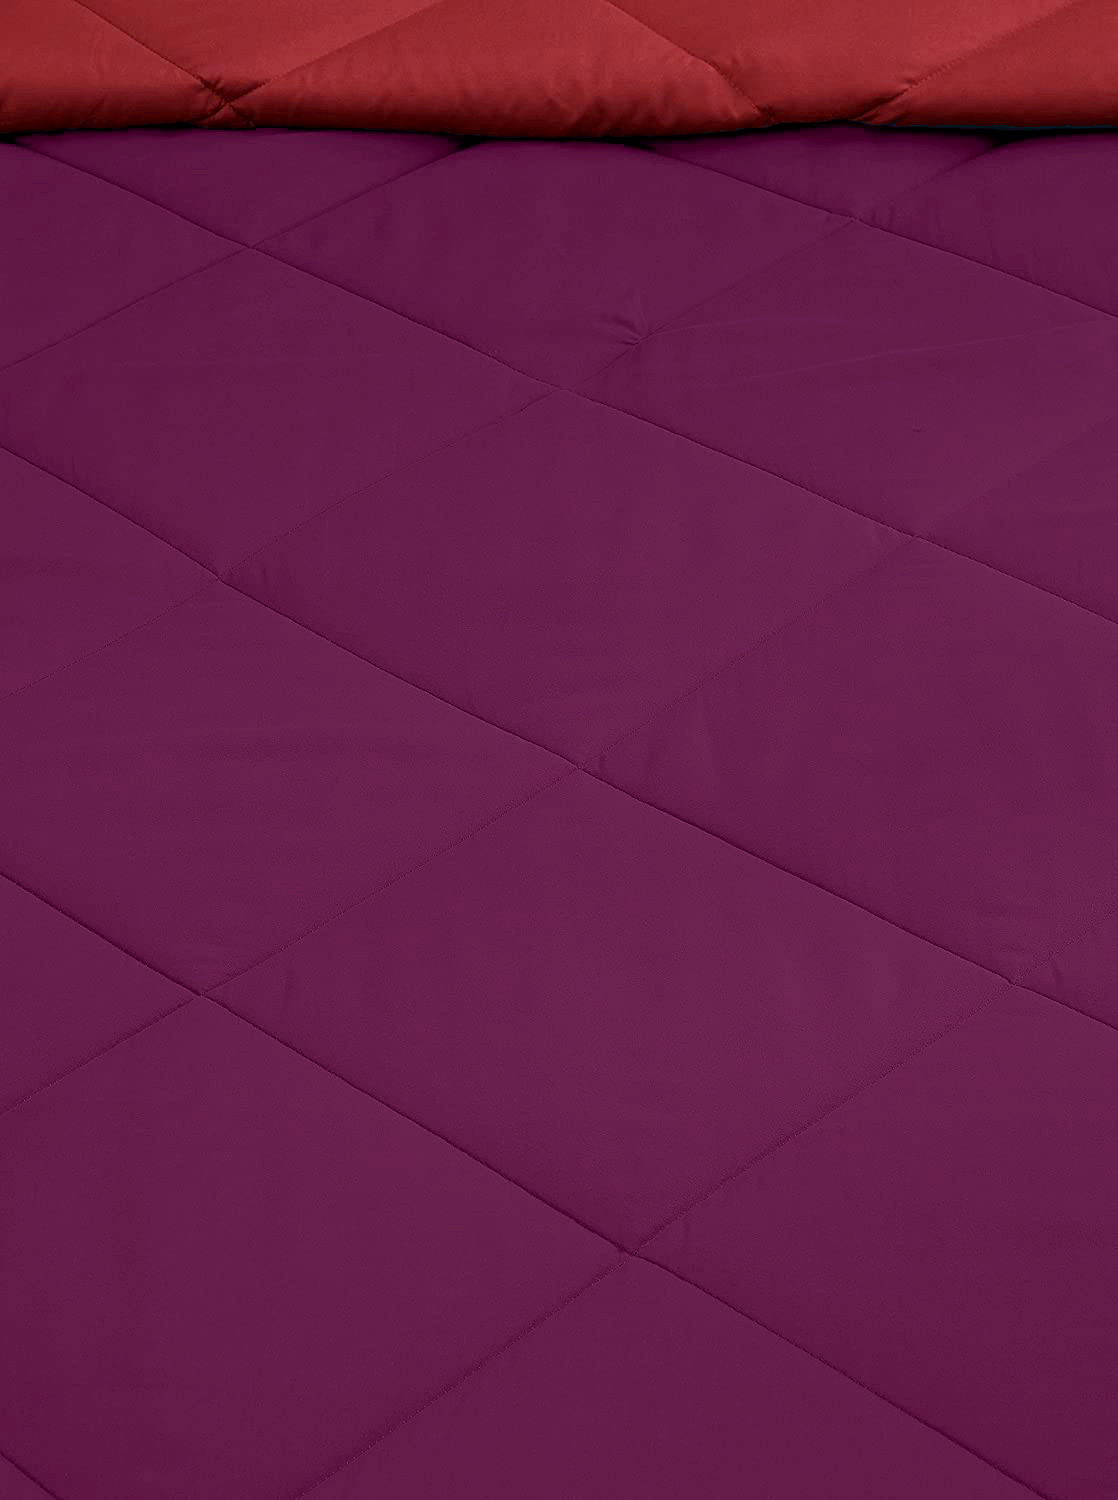 Kuber Industries Comforter for Double Bed|Microfiber Winter Comforter for Double Bed|220 GSM Reversible Comforter|AC Quilt|Dohar|Blanket |Purple & Pink